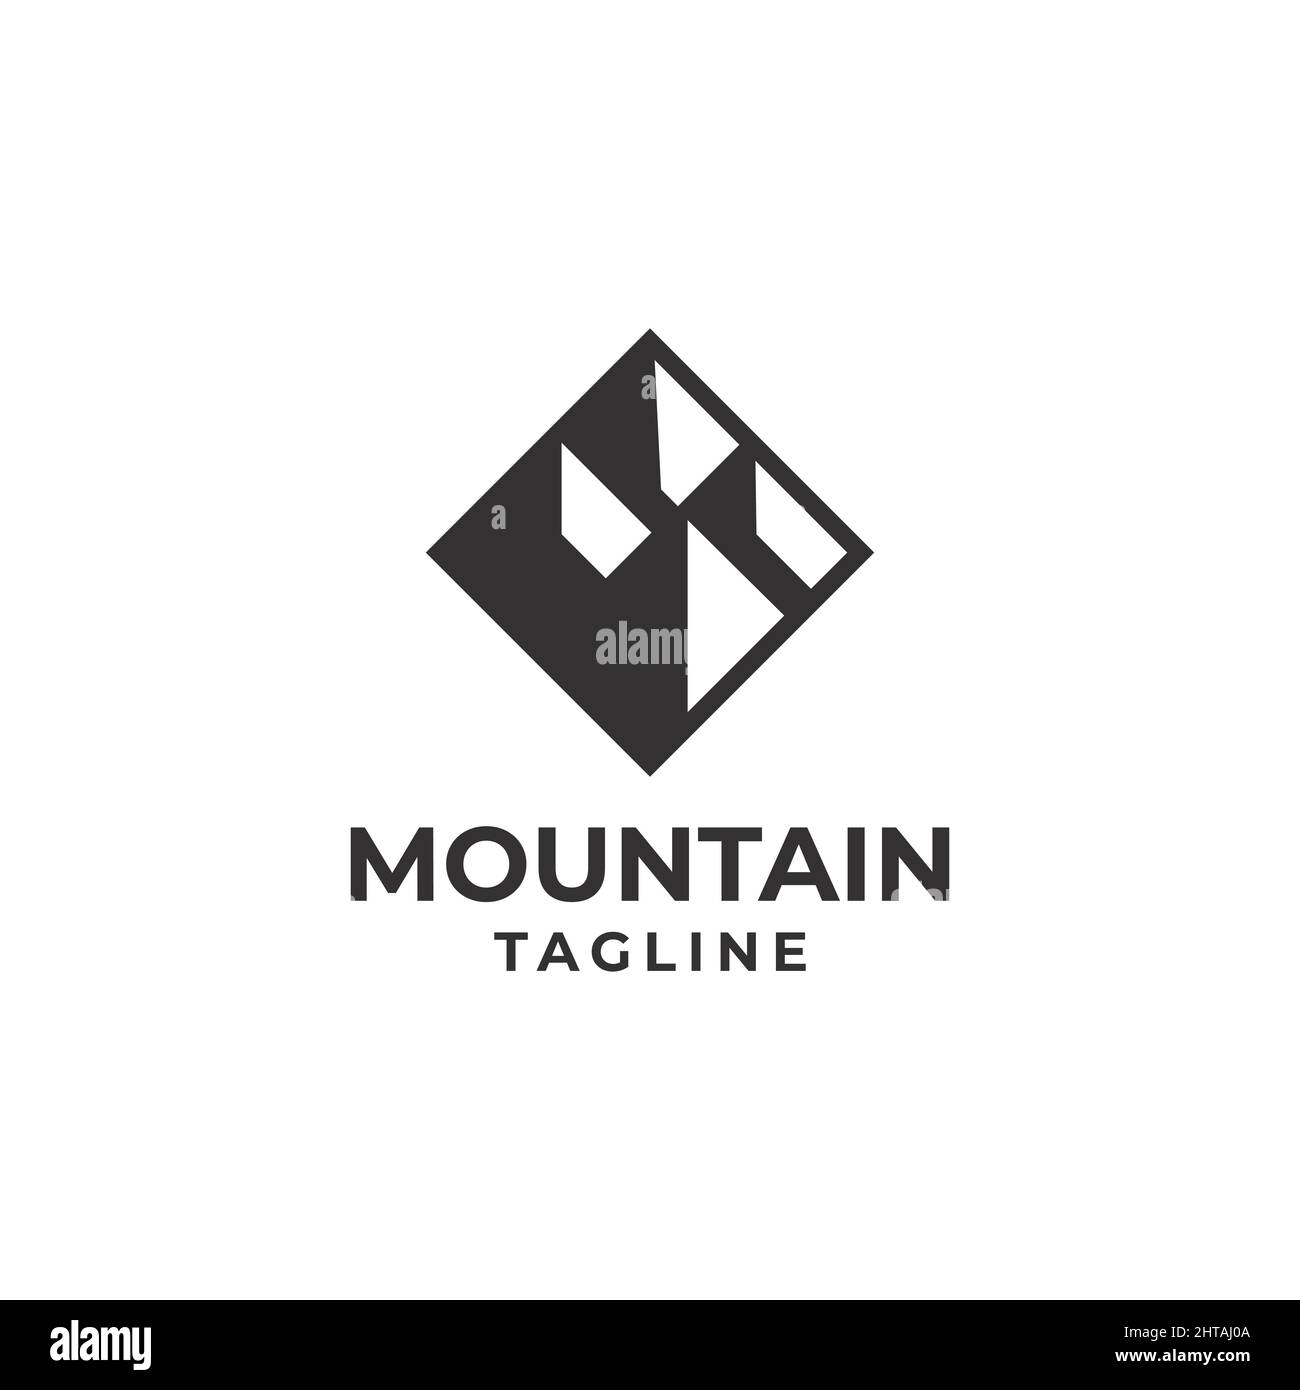 Mountain logo design illustration vector template Stock Vector